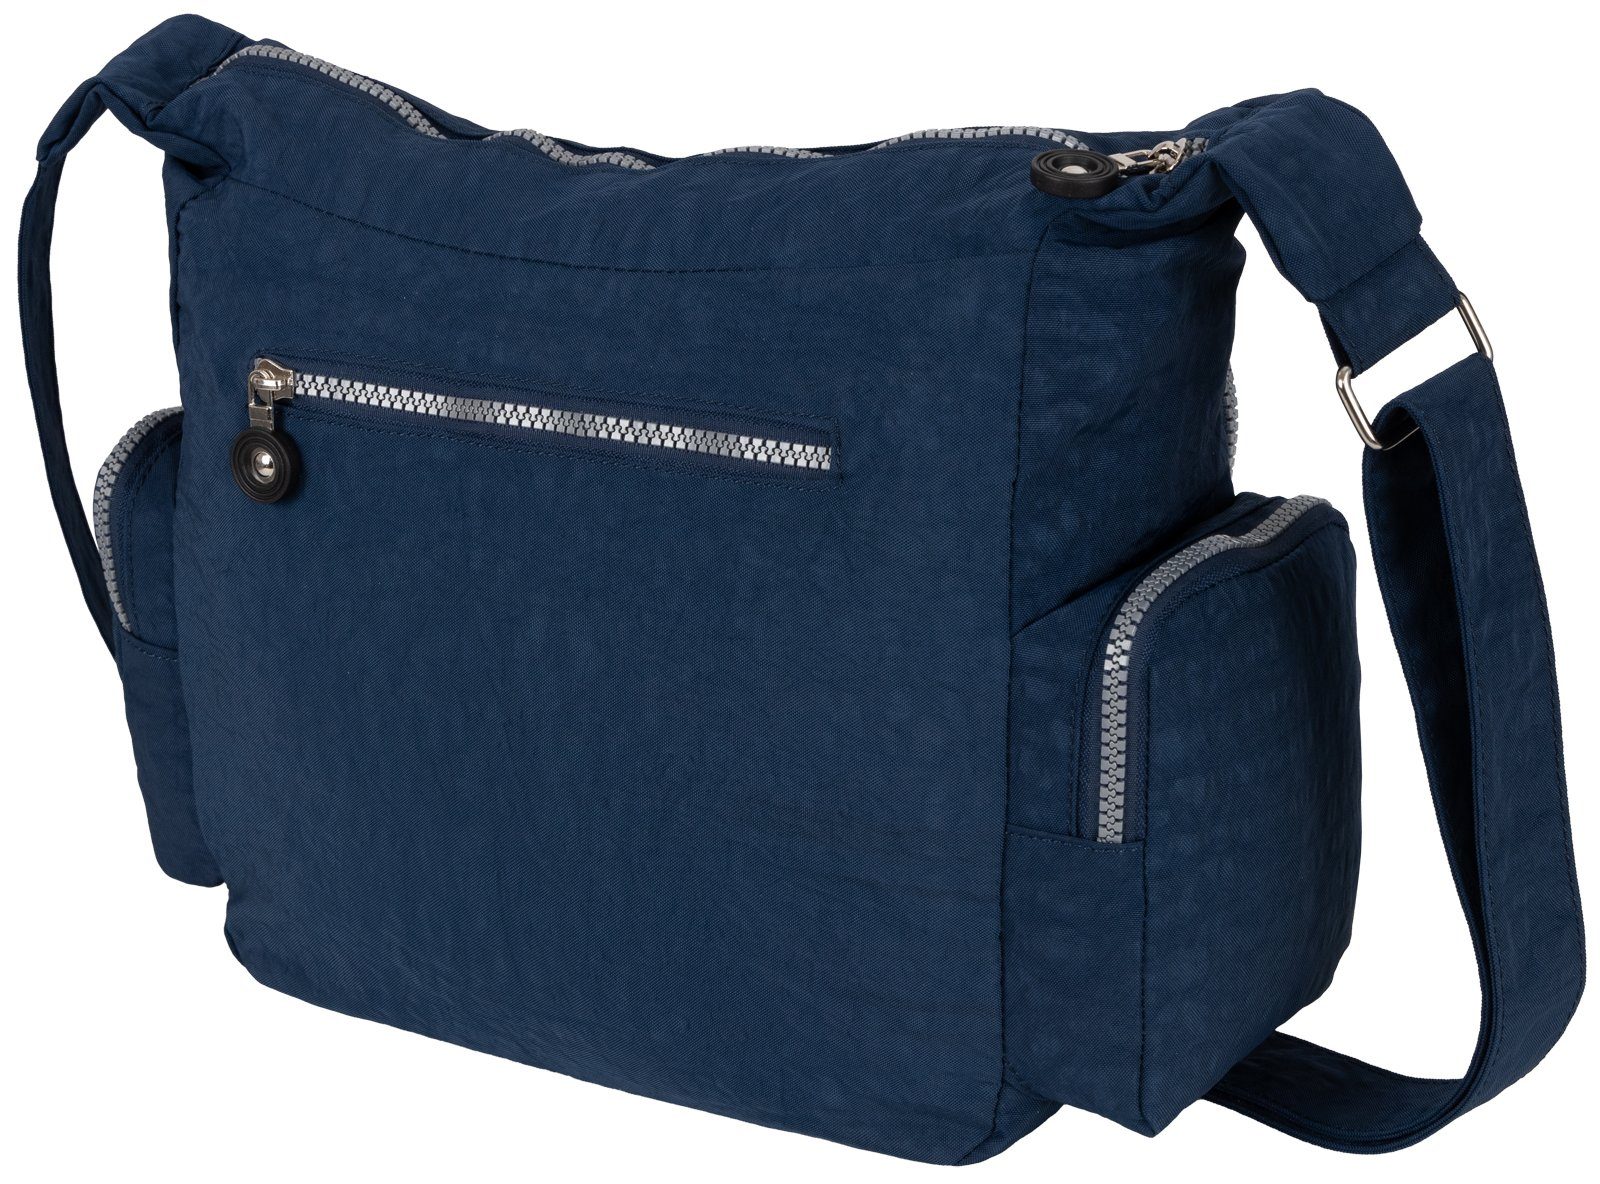 Schultertasche Blau Umhängetasche Damentasche STREET Umhängetasche Handtasche Umhängetasche BAG Schultertasche, Taupe, tragbar als